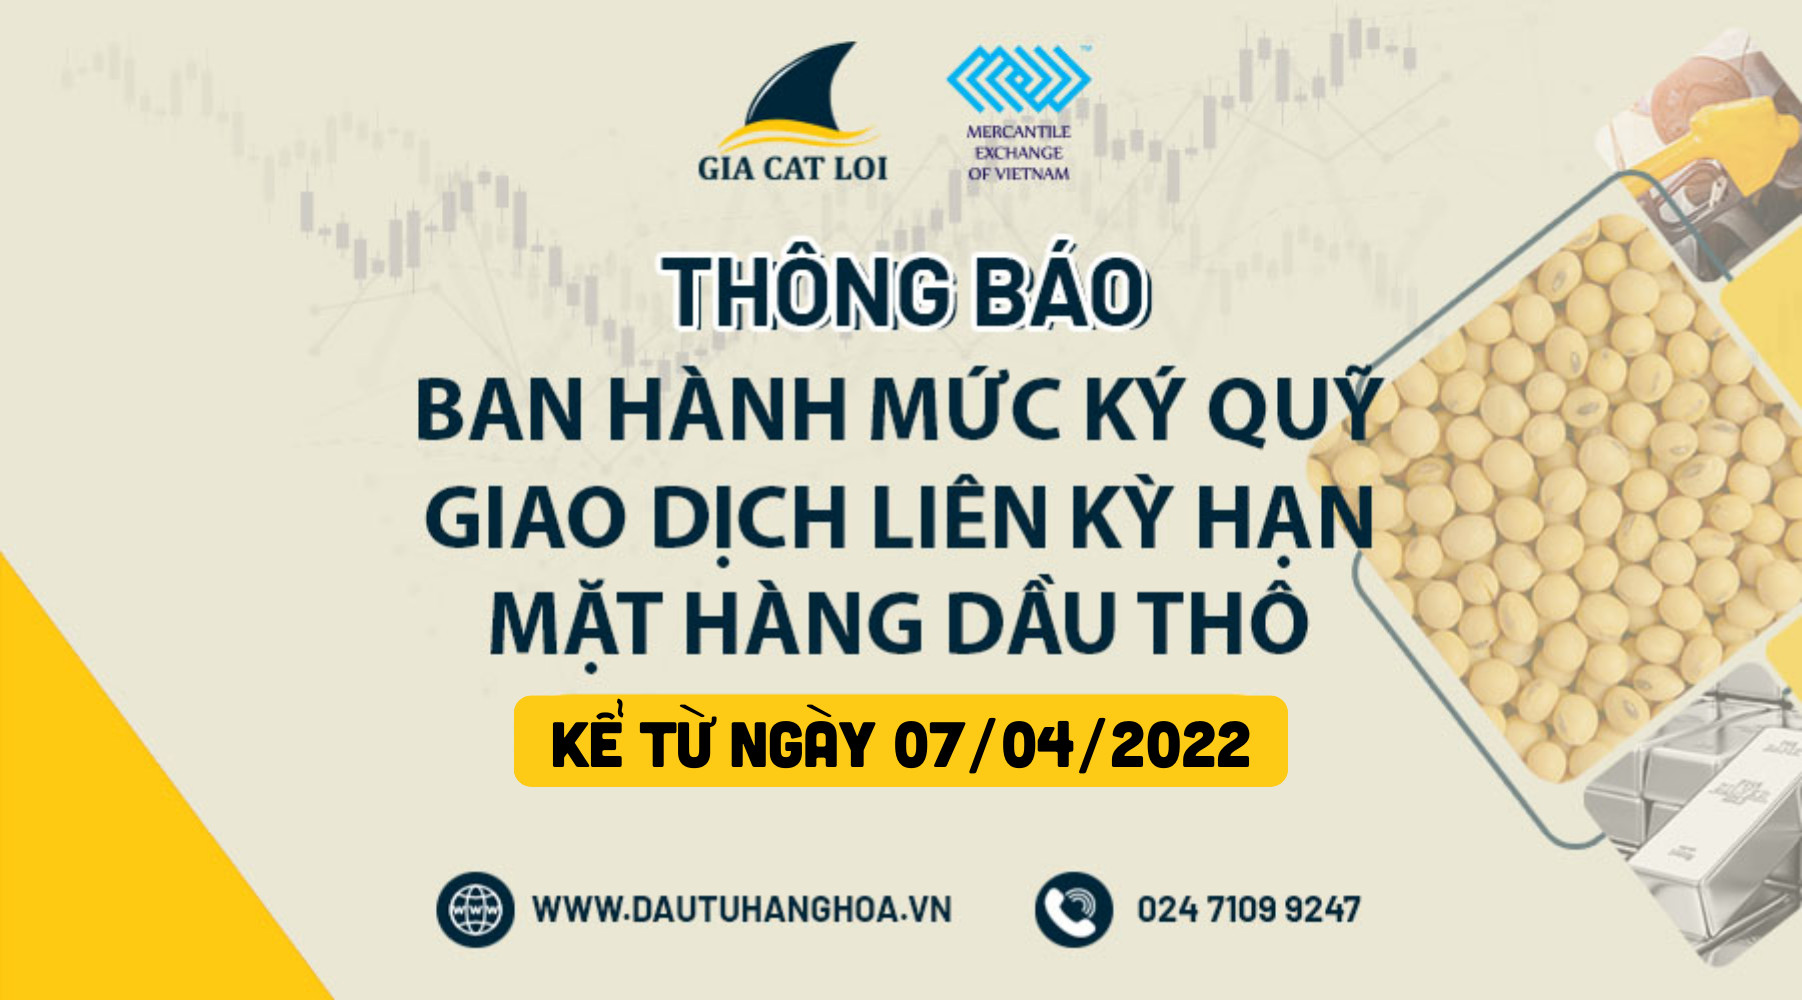 Mức Ký Quỹ Dầu Thô 07/04/2022